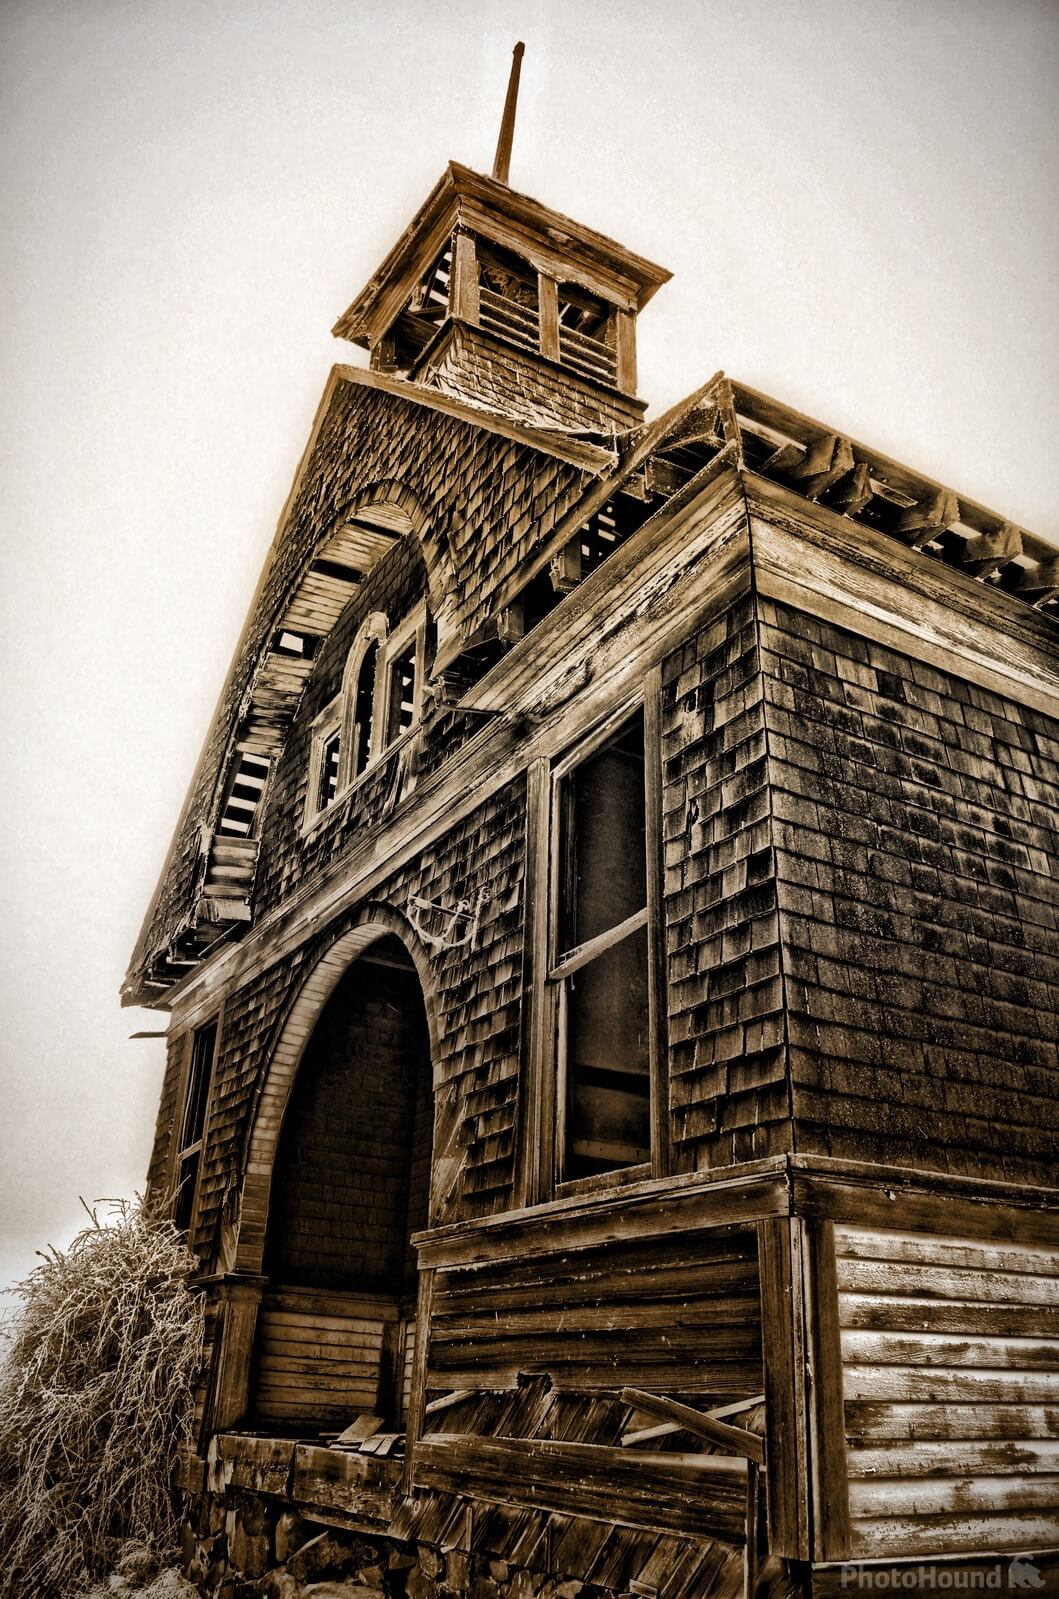 Image of Govan Schoolhouse by Steve West